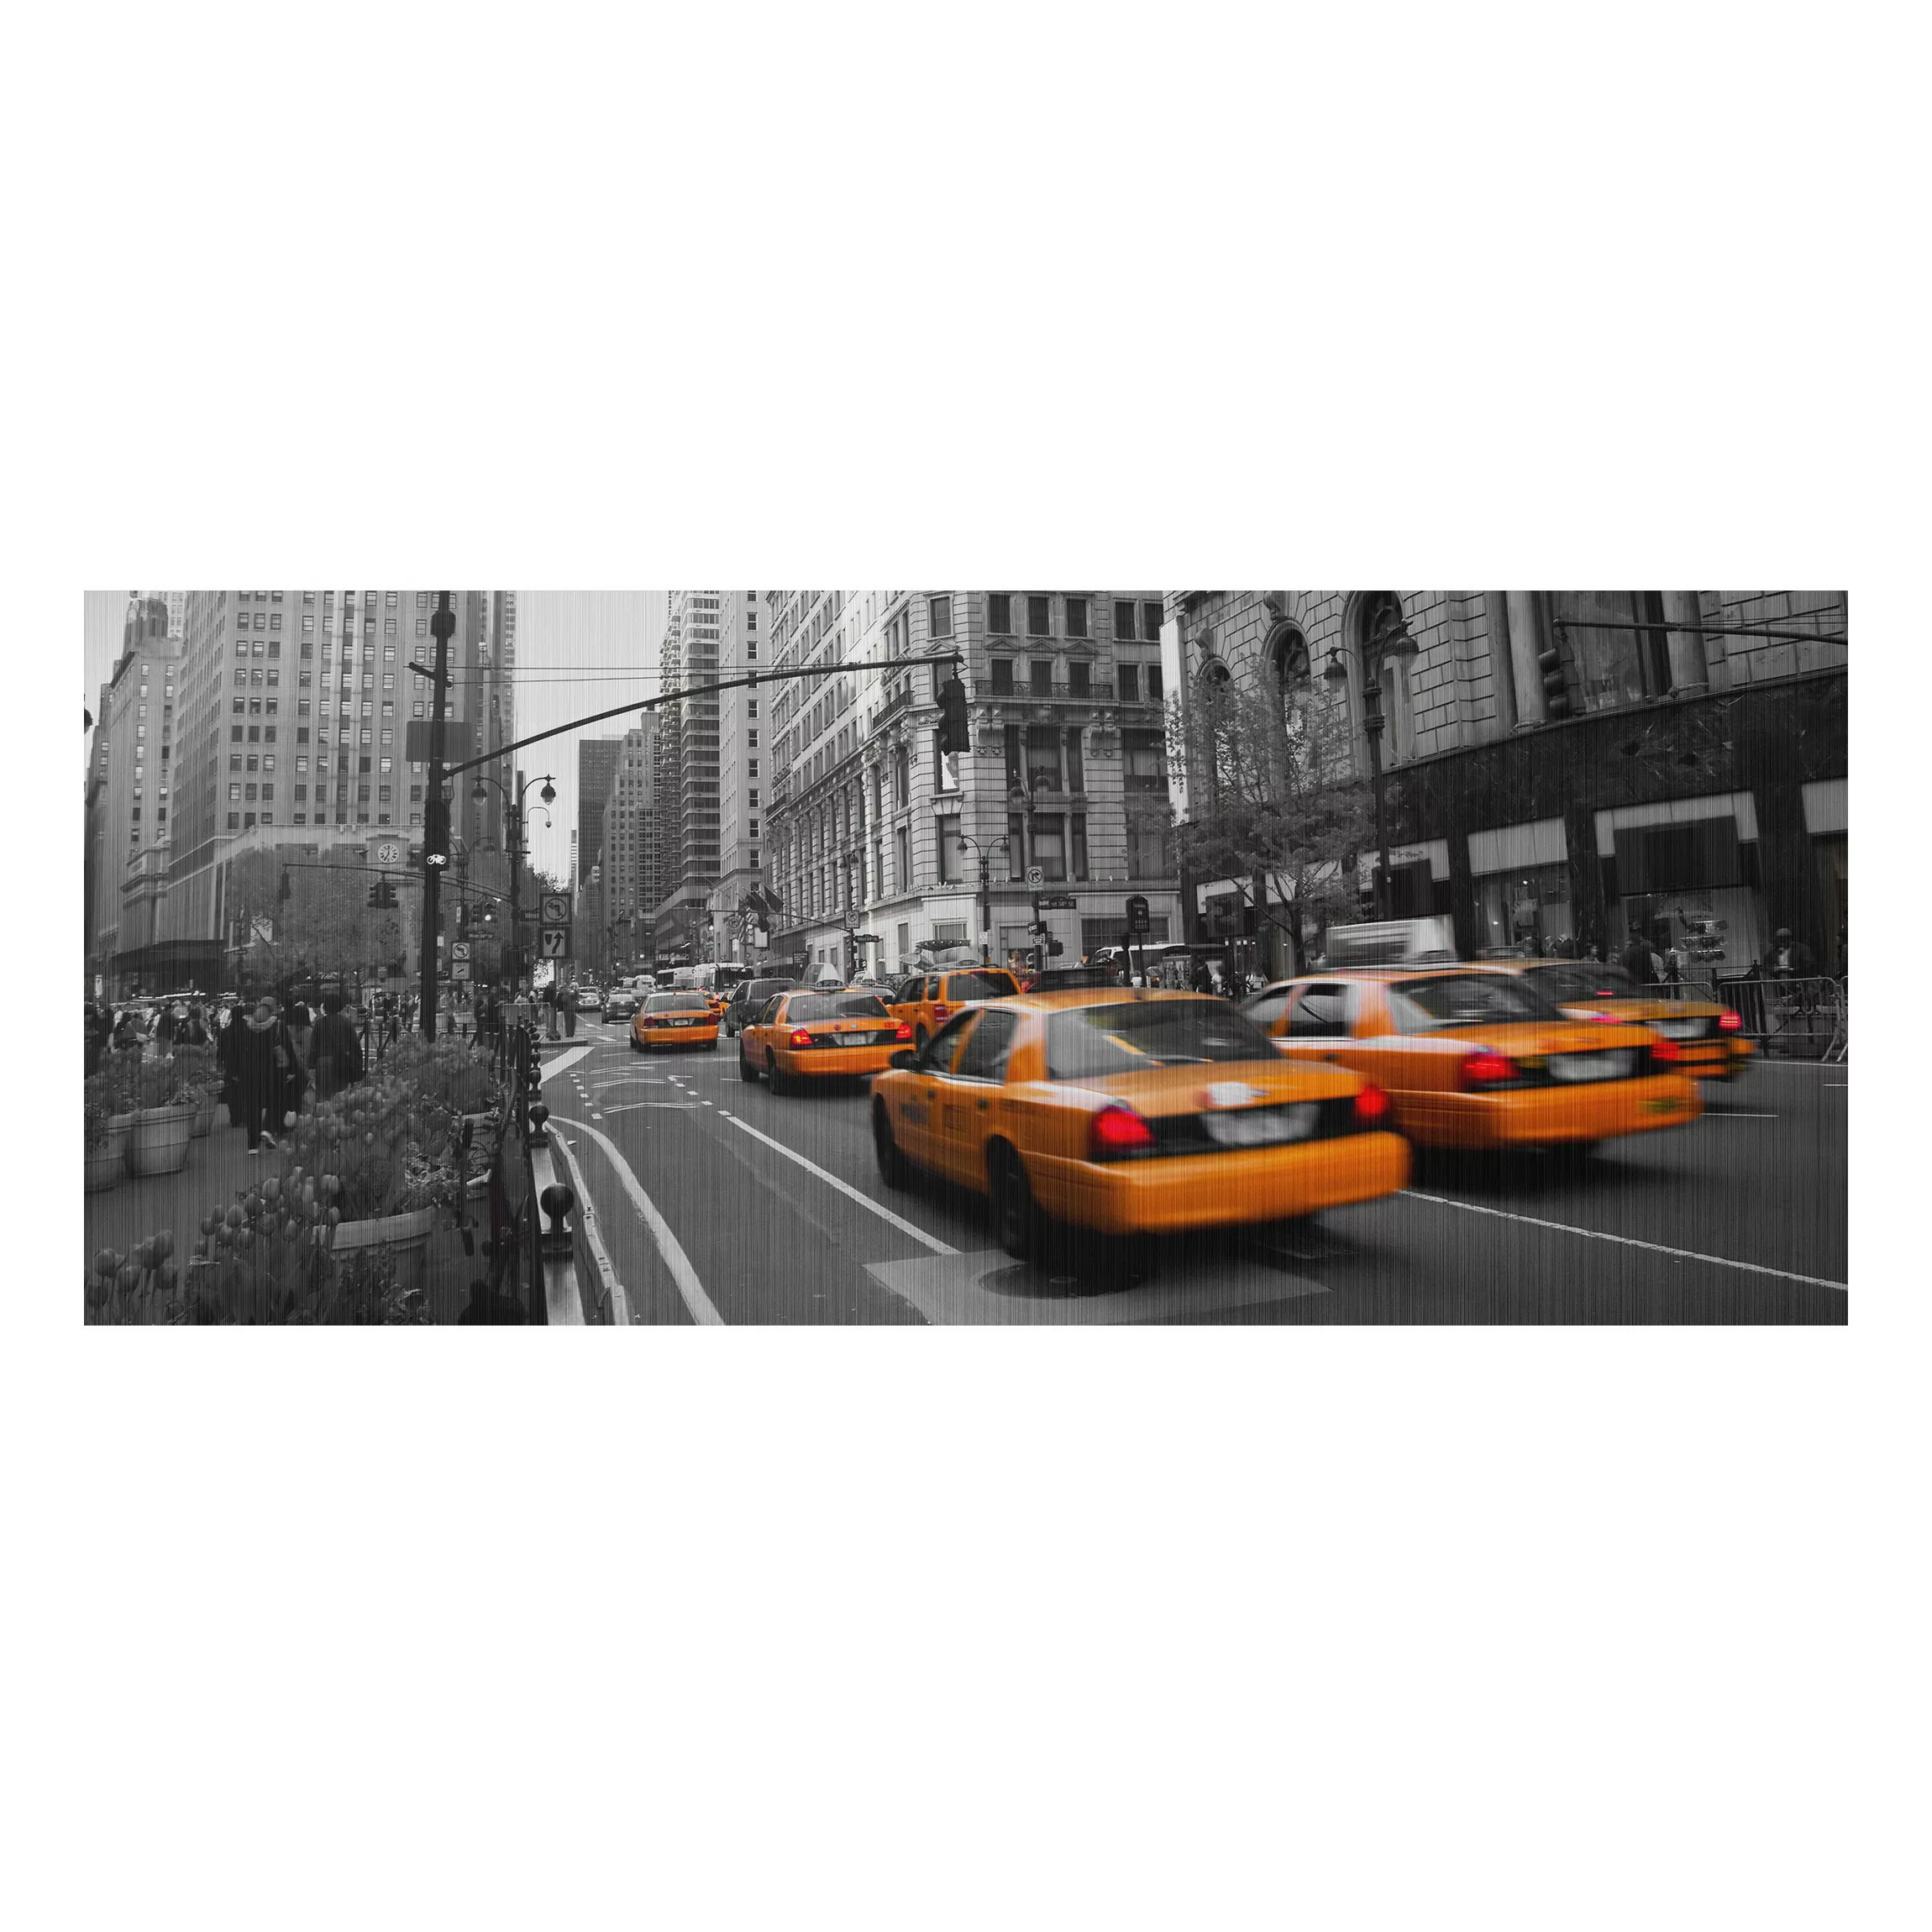 Alu-Dibond Bild Schwarz-Weiß - Panorama New York, New York! günstig online kaufen